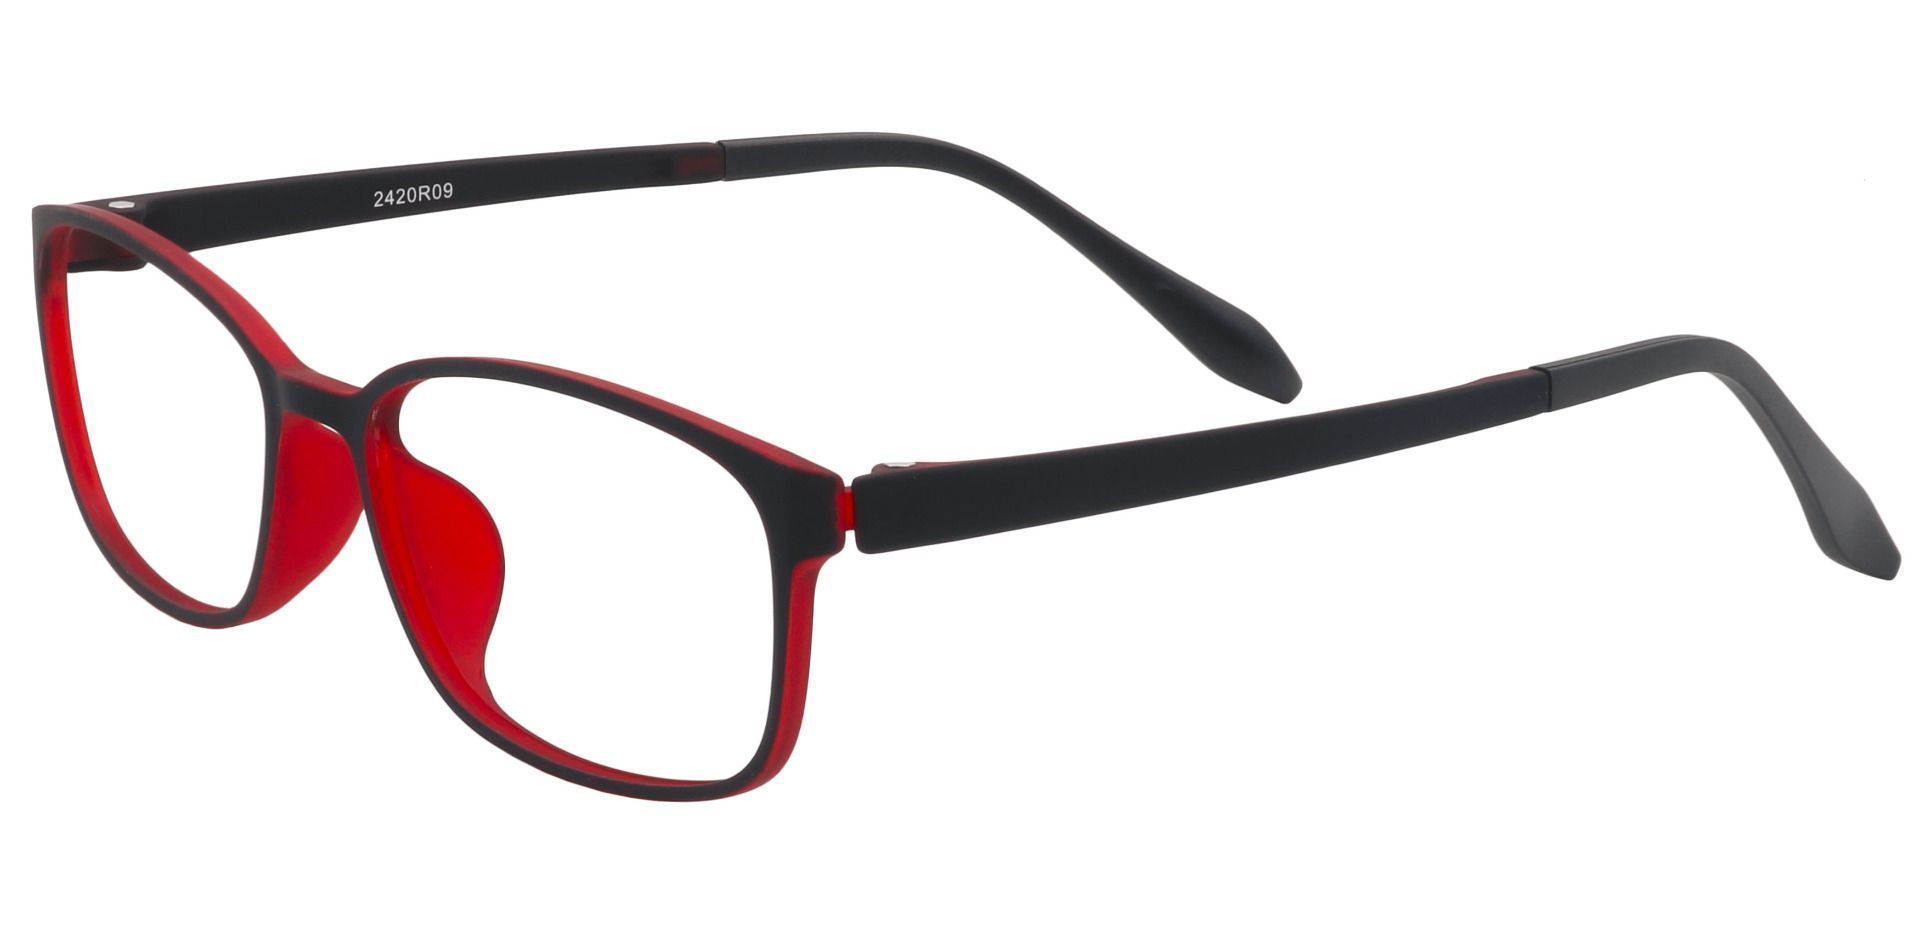 Merlot Rectangle Progressive Glasses - Matte Black/red